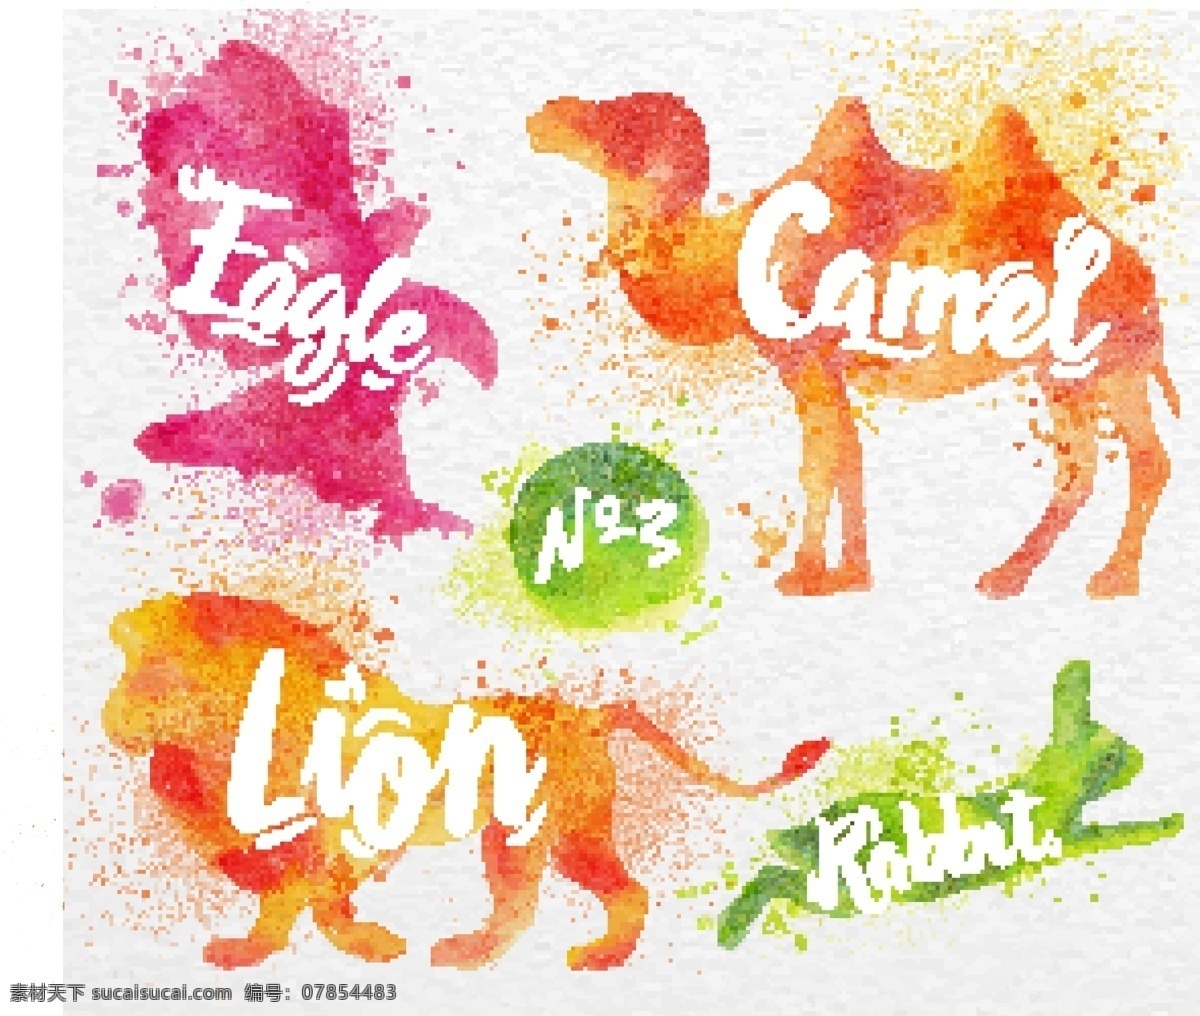 卡通 狮子 水彩 动物 矢量 老鹰 红色 骆驼 源文件 高清 免费素材 图片图案 设计图案 下载素材